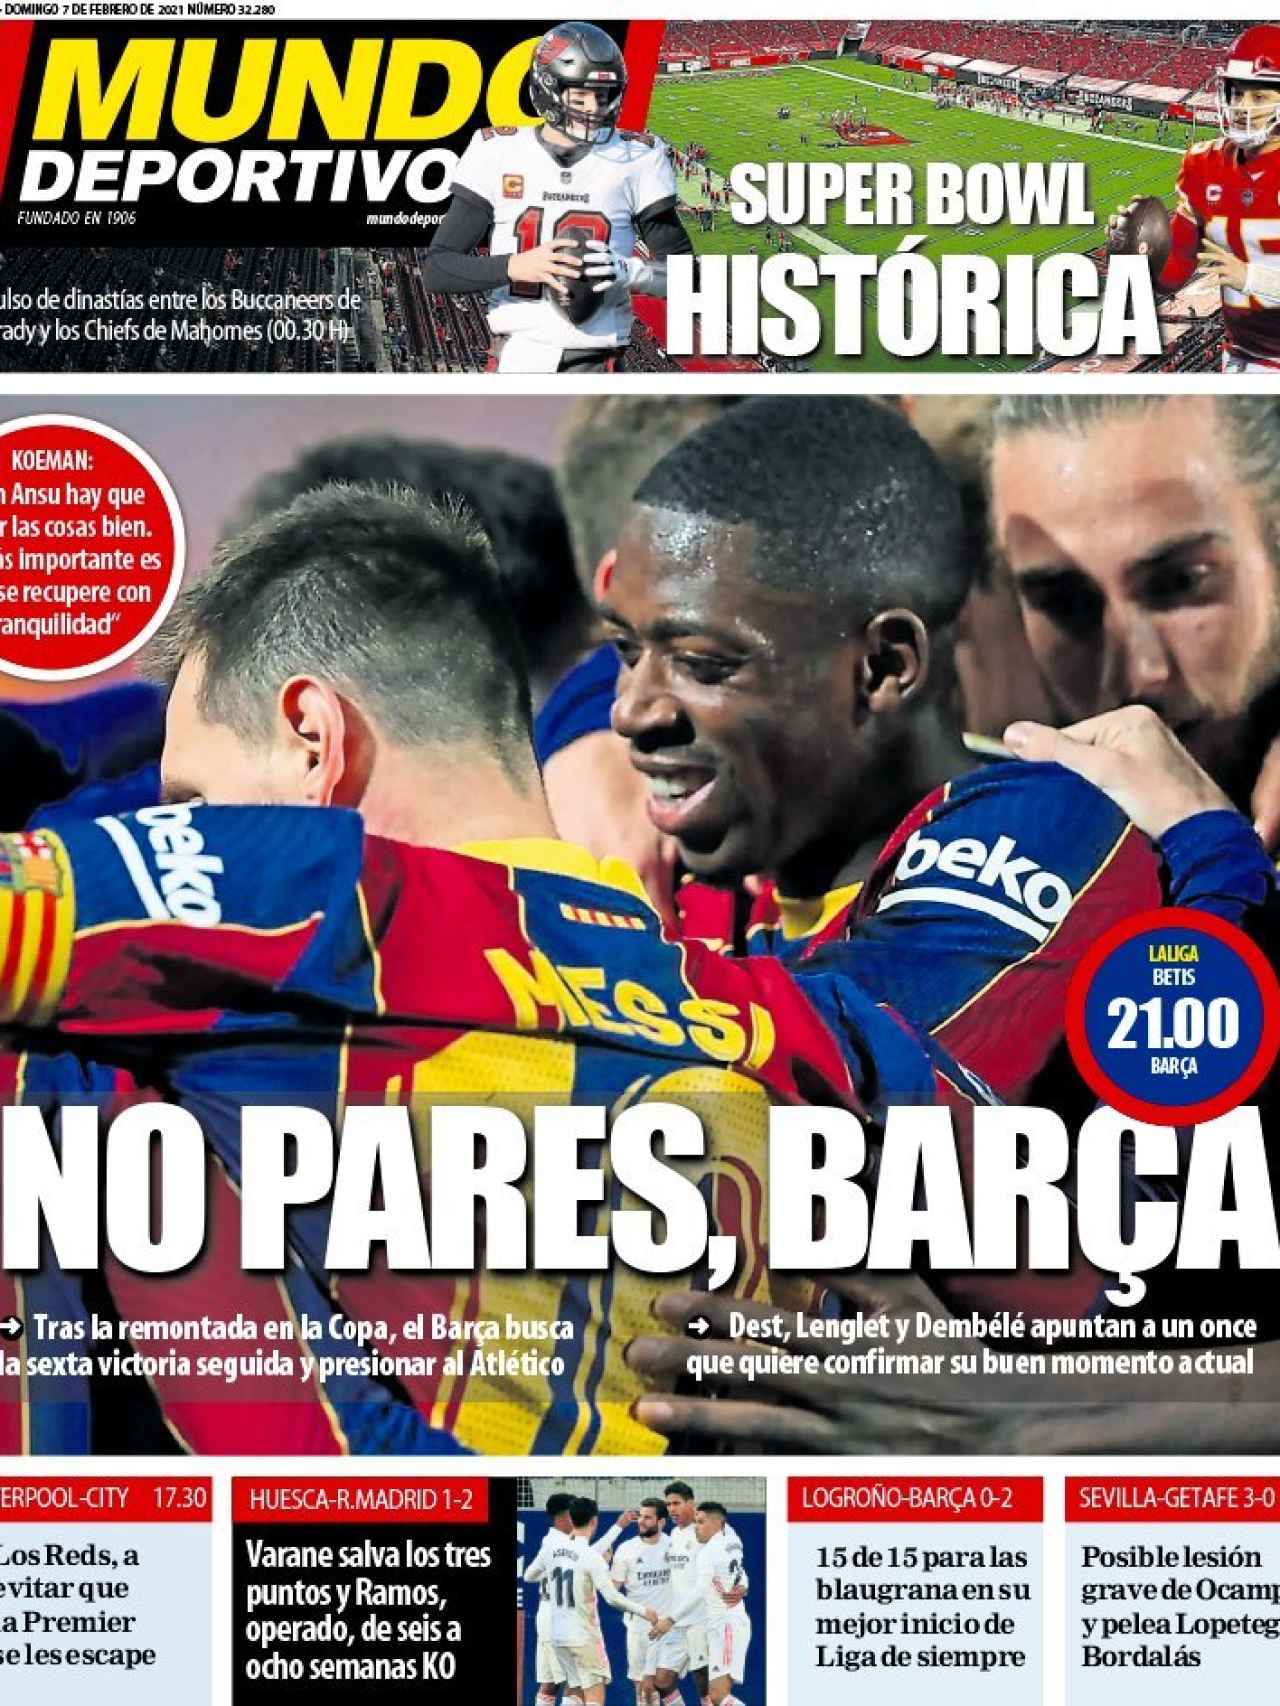 La portada del diario Mundo Deportivo (07/02/2021)